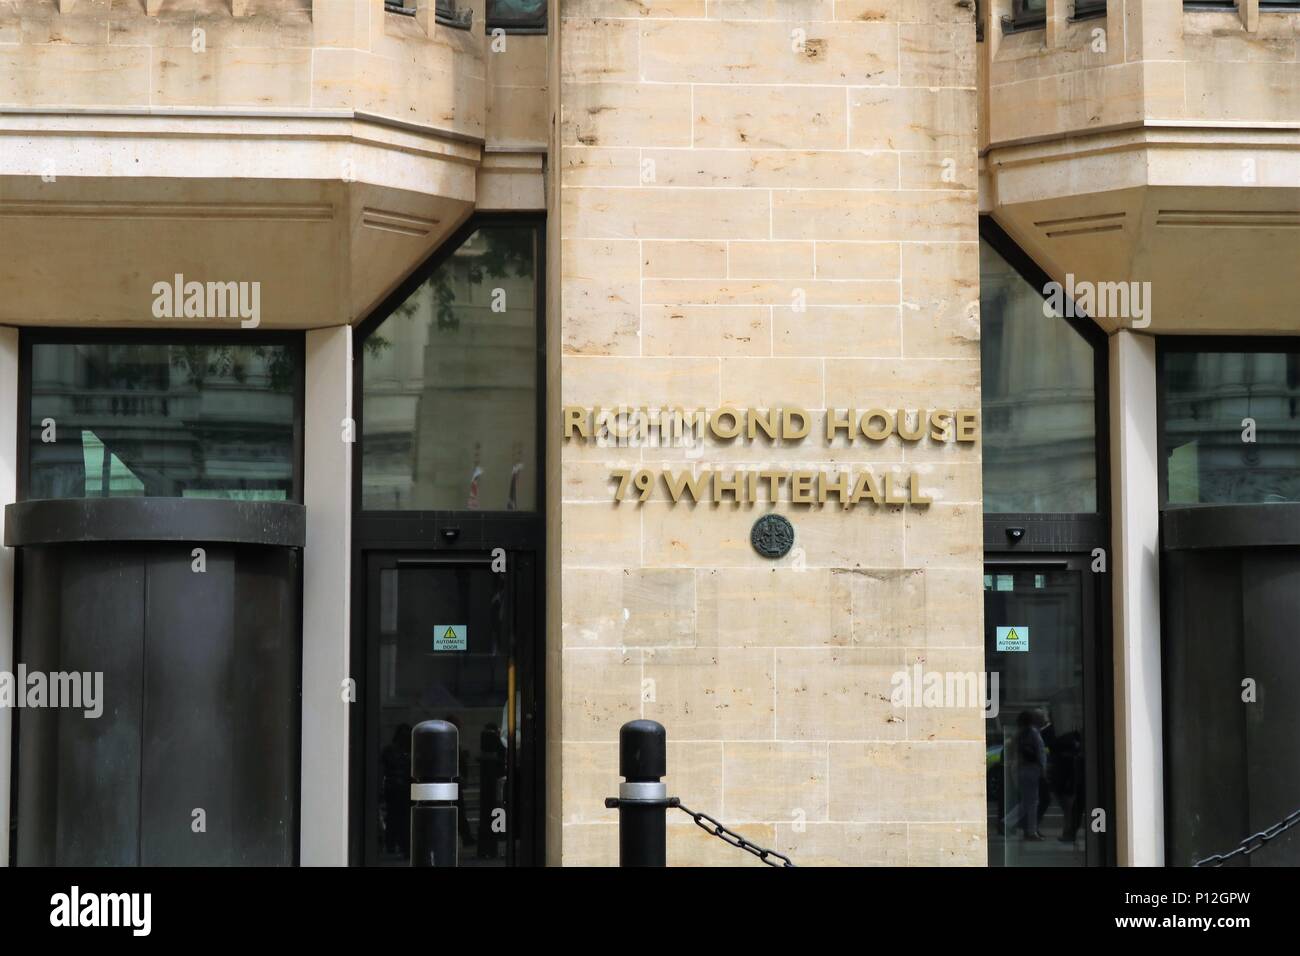 Richmond House, 79 Whitehall, Londres, UK - Palais du gouvernement Banque D'Images